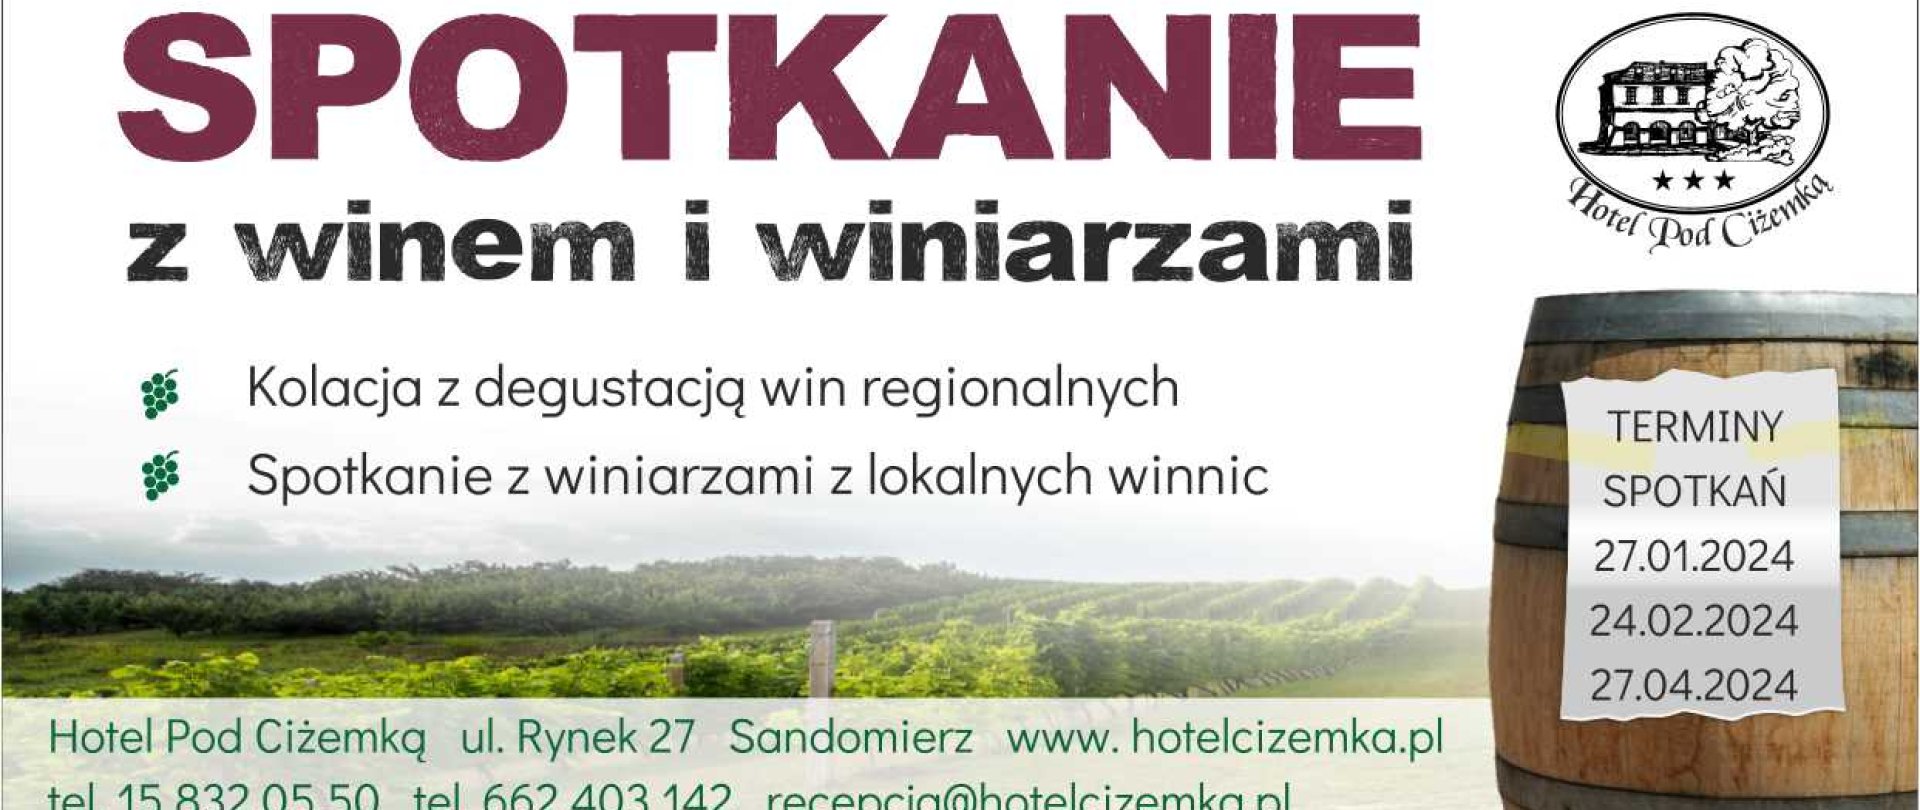 Spotkanie z winami i winiarzami regionu sandomierskiego 